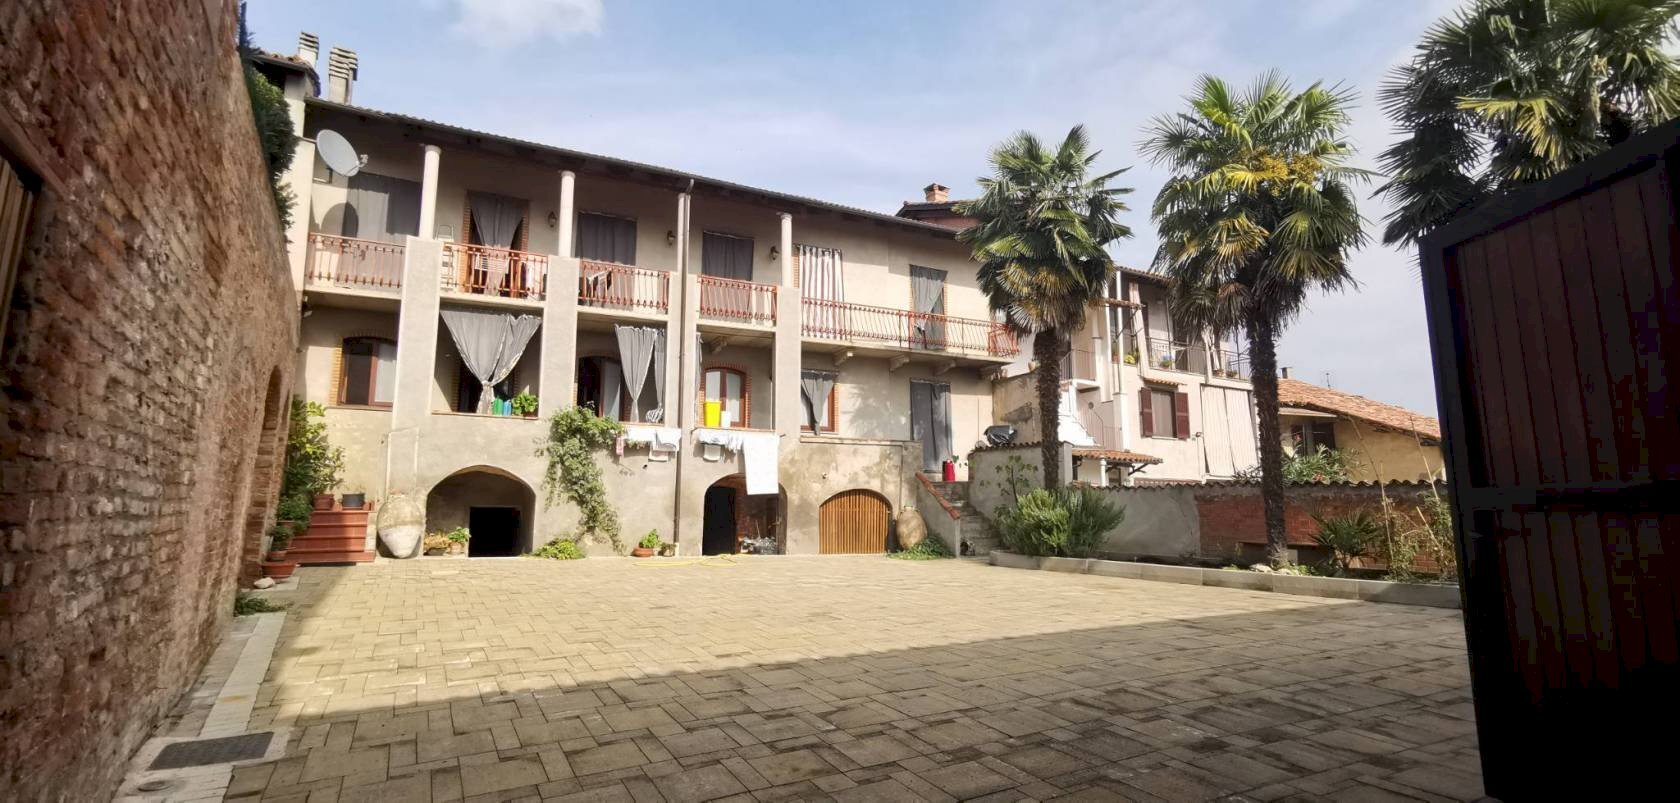 Rustico / Casale in vendita a Montemagno, 1 locali, prezzo € 150.000 | PortaleAgenzieImmobiliari.it